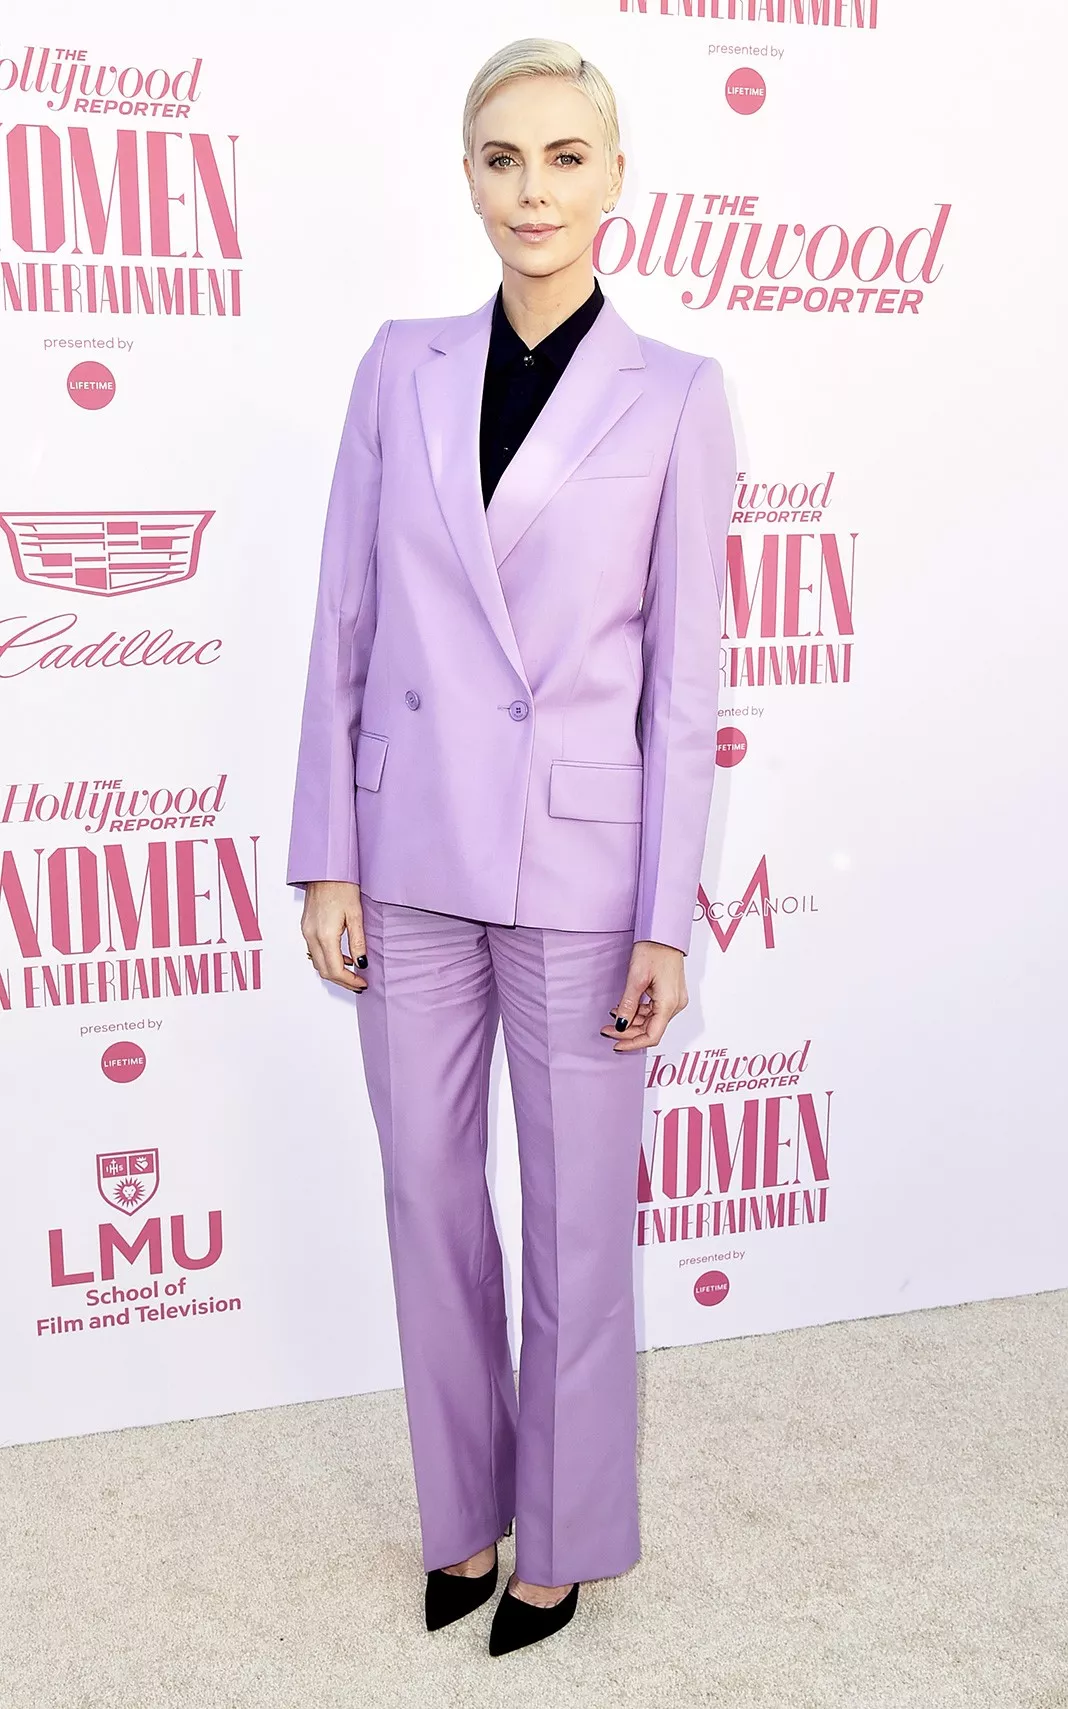 Шарлиз Терон на премии The Hollywood Reporter's Power 100 Women in Entertainment в Голливуде, 11 декабря 2019 г.